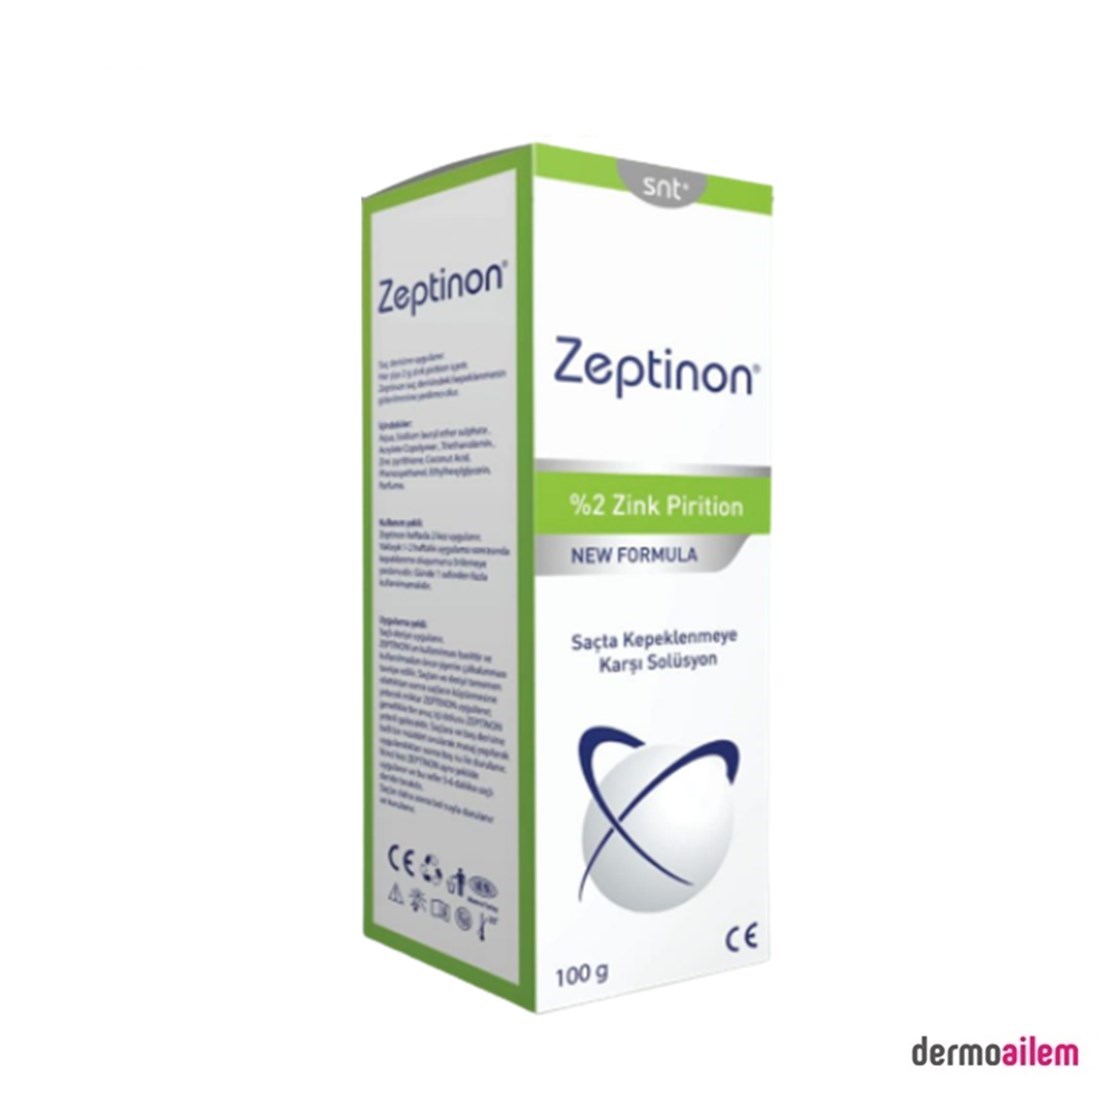 Zeptinon Kepeklenmeye Karşı Solüsyon Şampuan 100 gr Fiyatları İndirimli |  Dermoailem.com